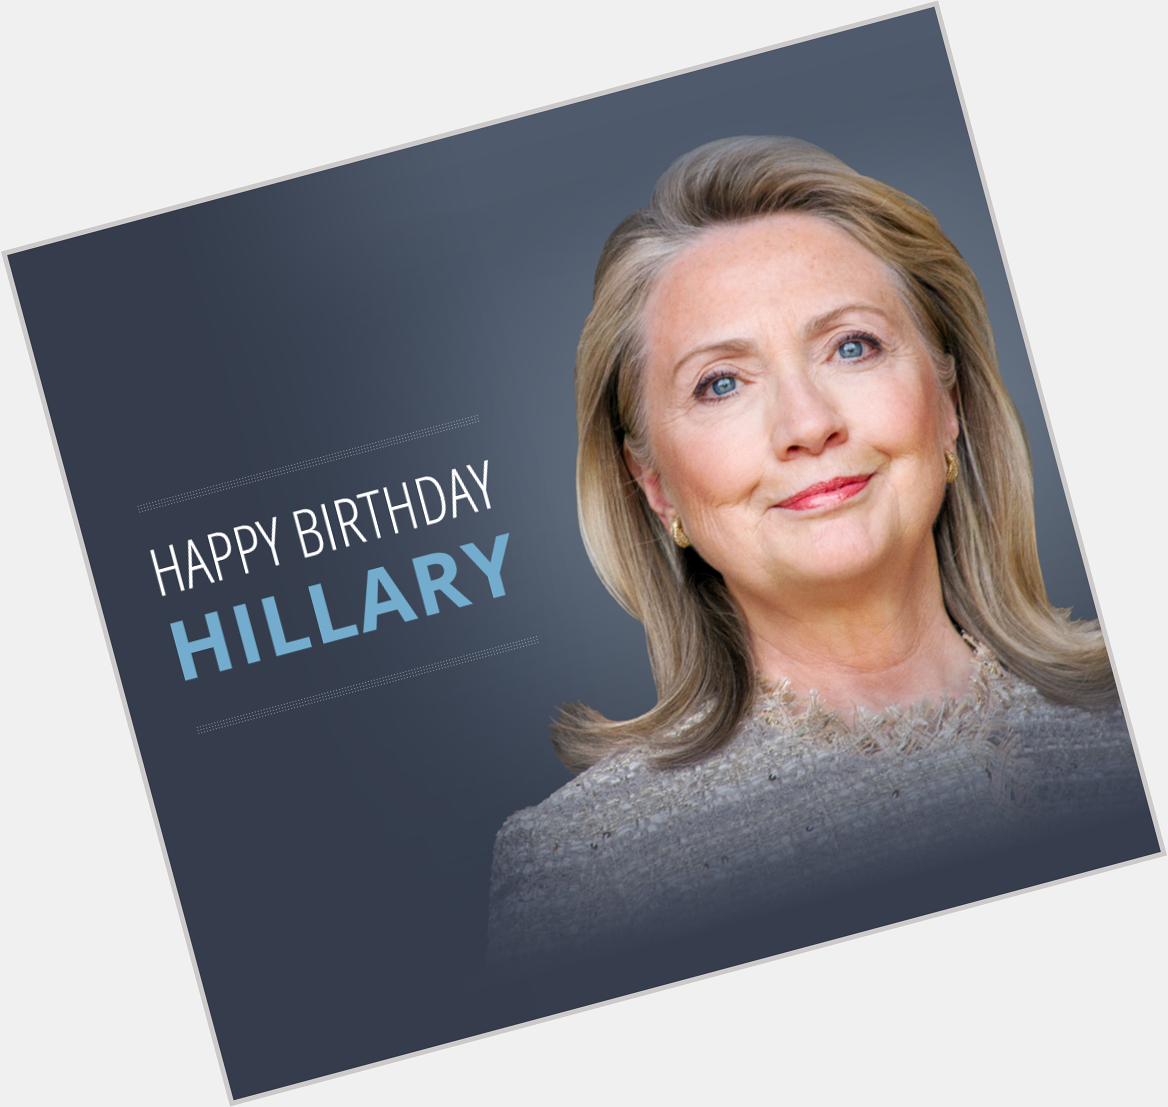 Happy Birthday Hillary Clinton
Wish Hillary a happy birthday by donating $5 
Donate-->   